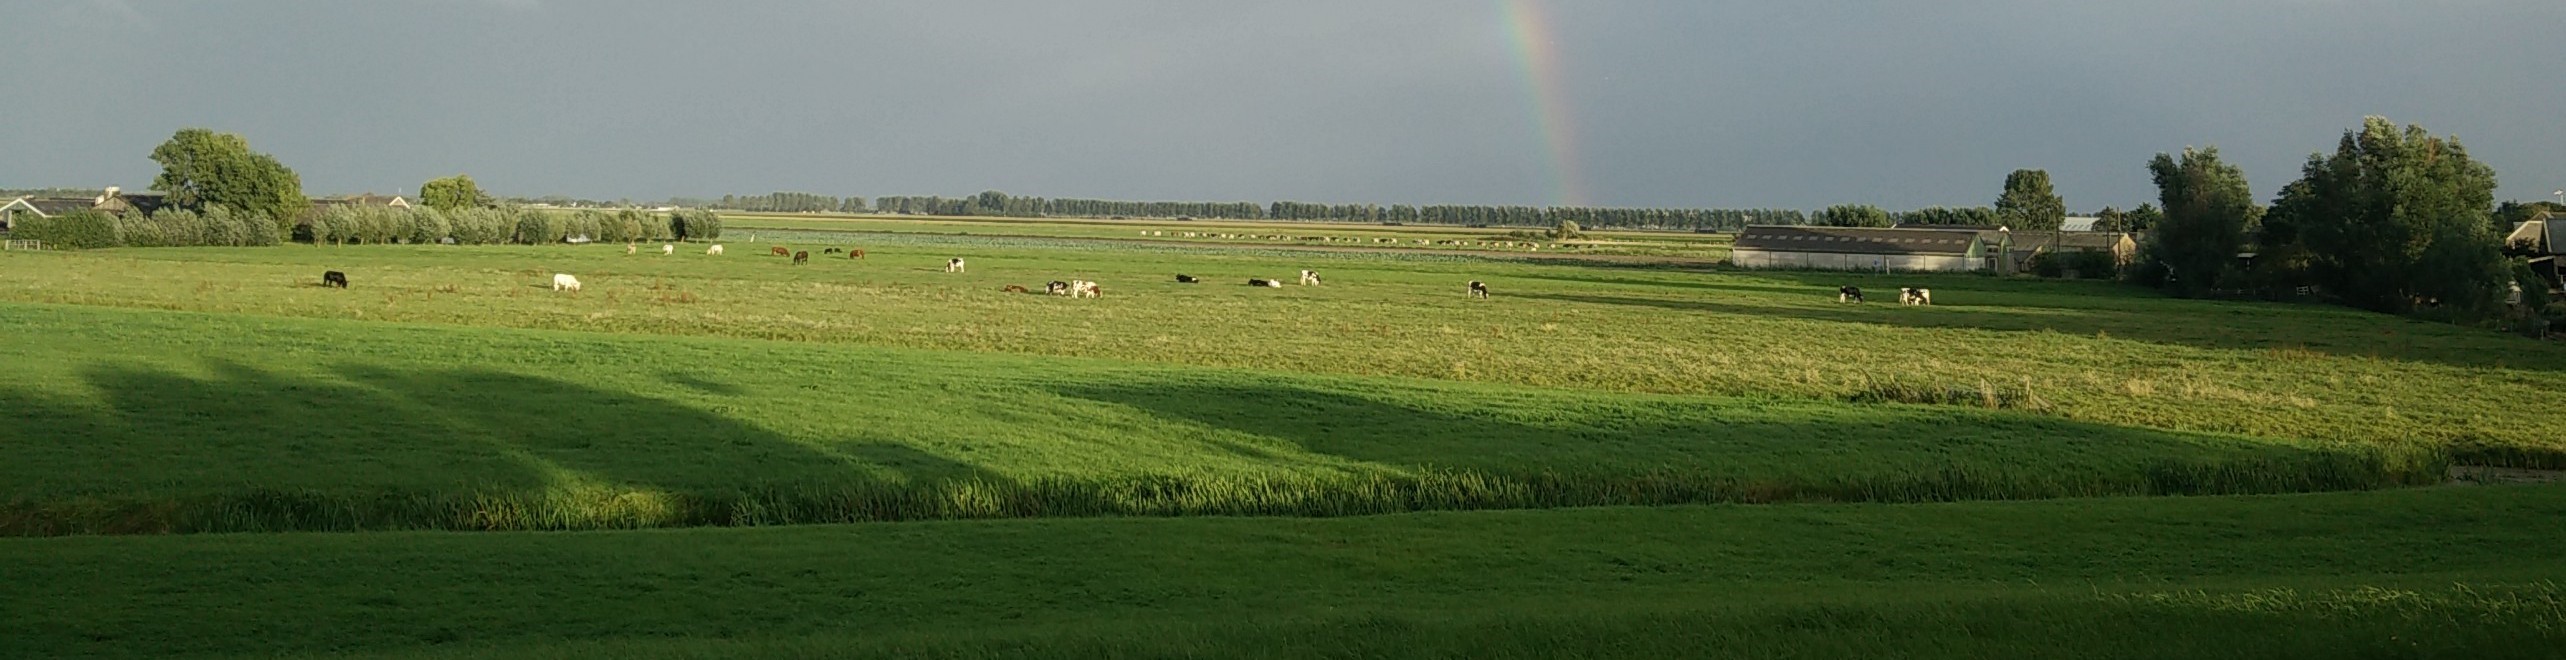 polder, breed